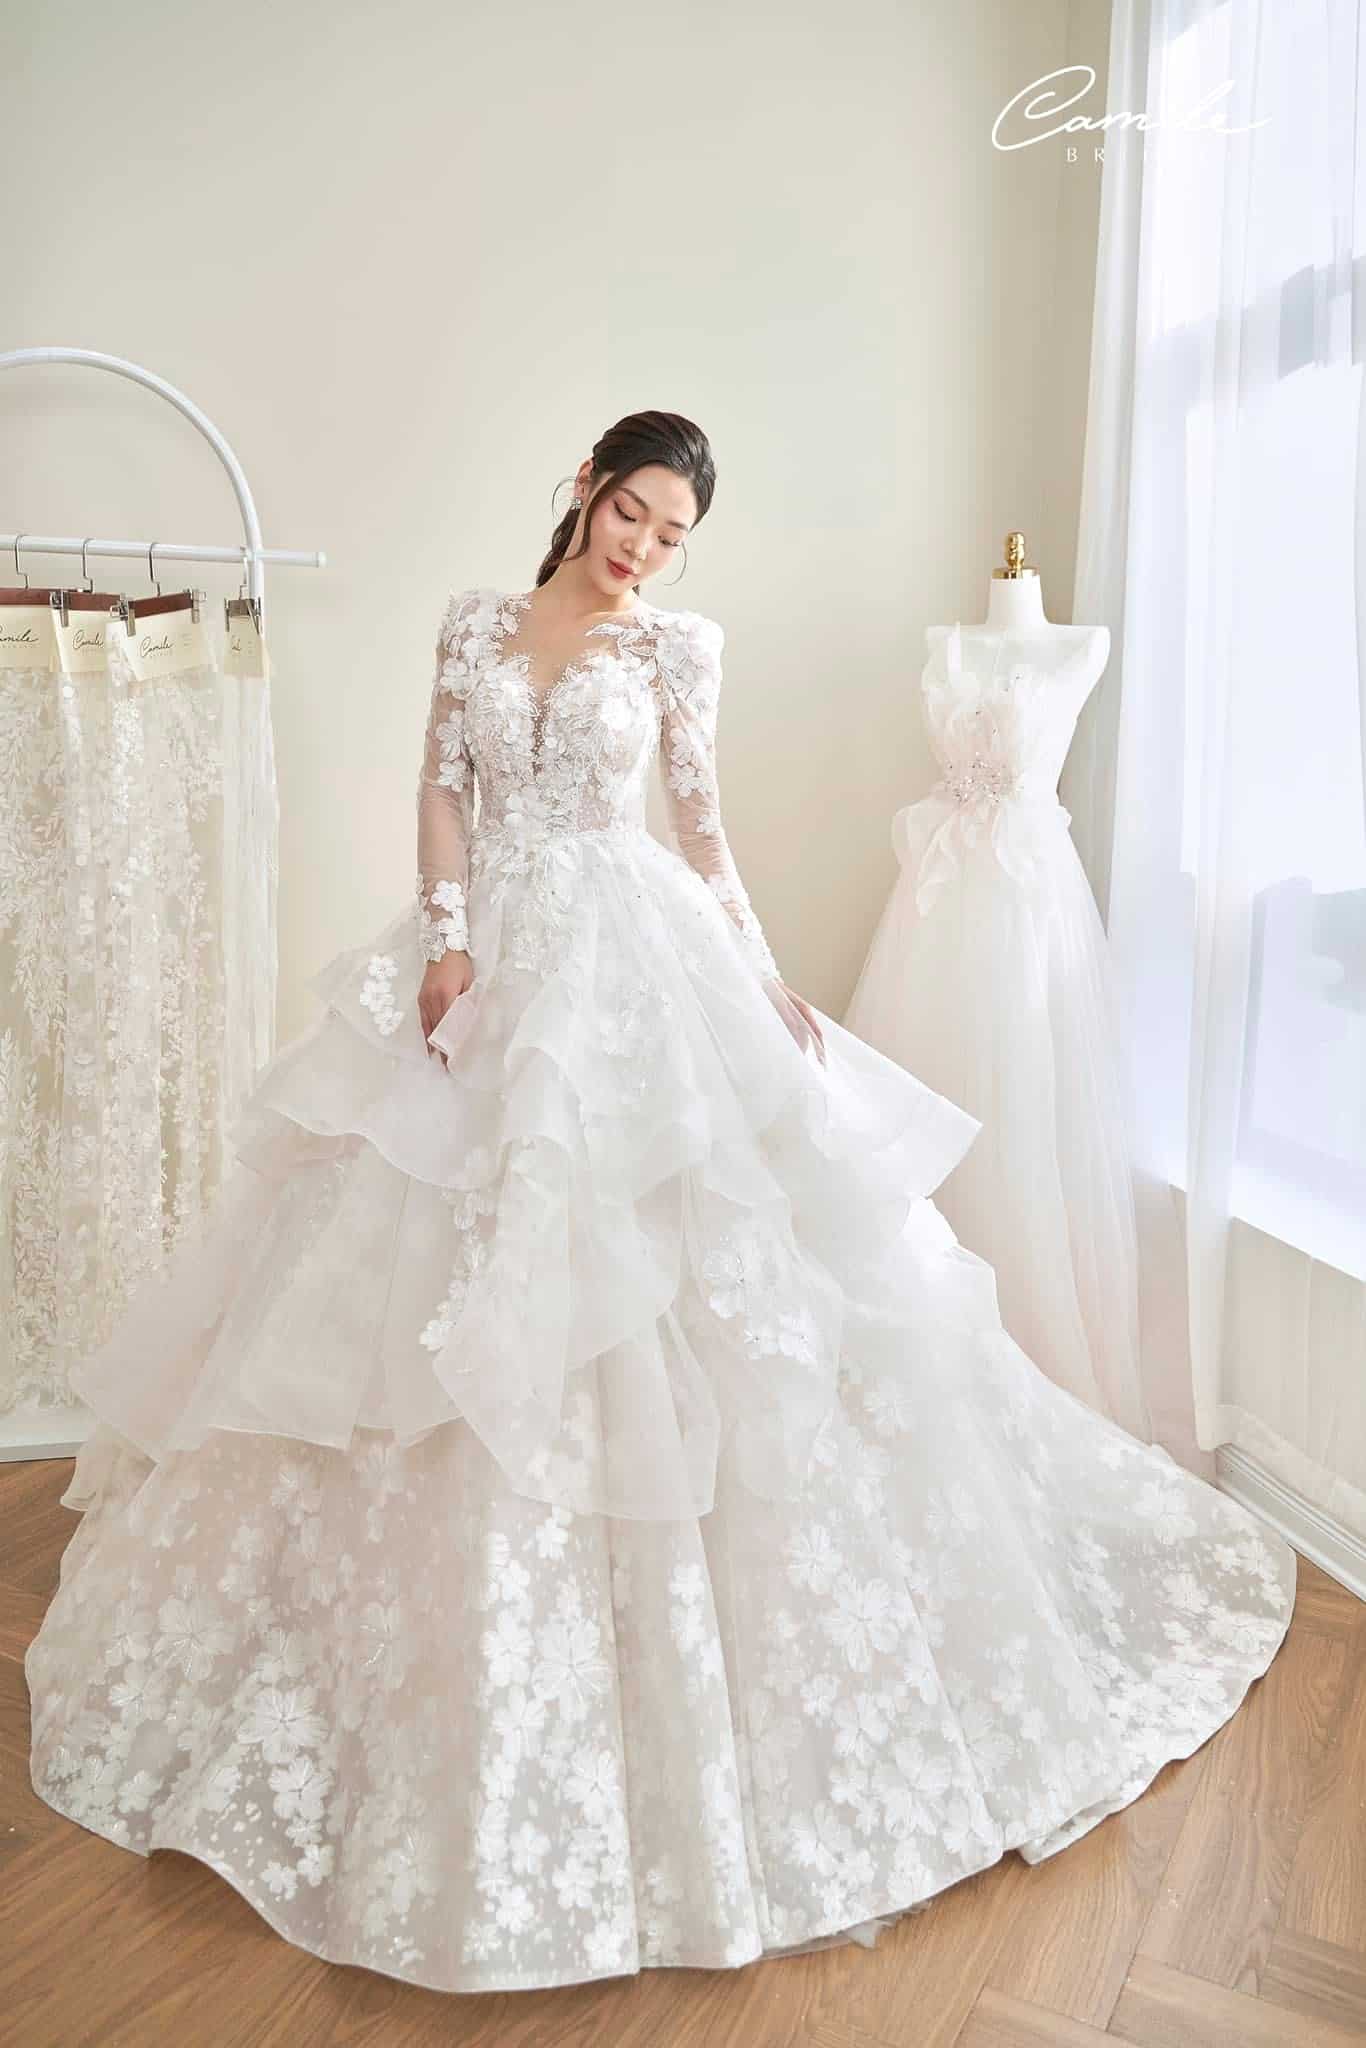 Rò rỉ thiết kế váy cưới của Nhã Phương